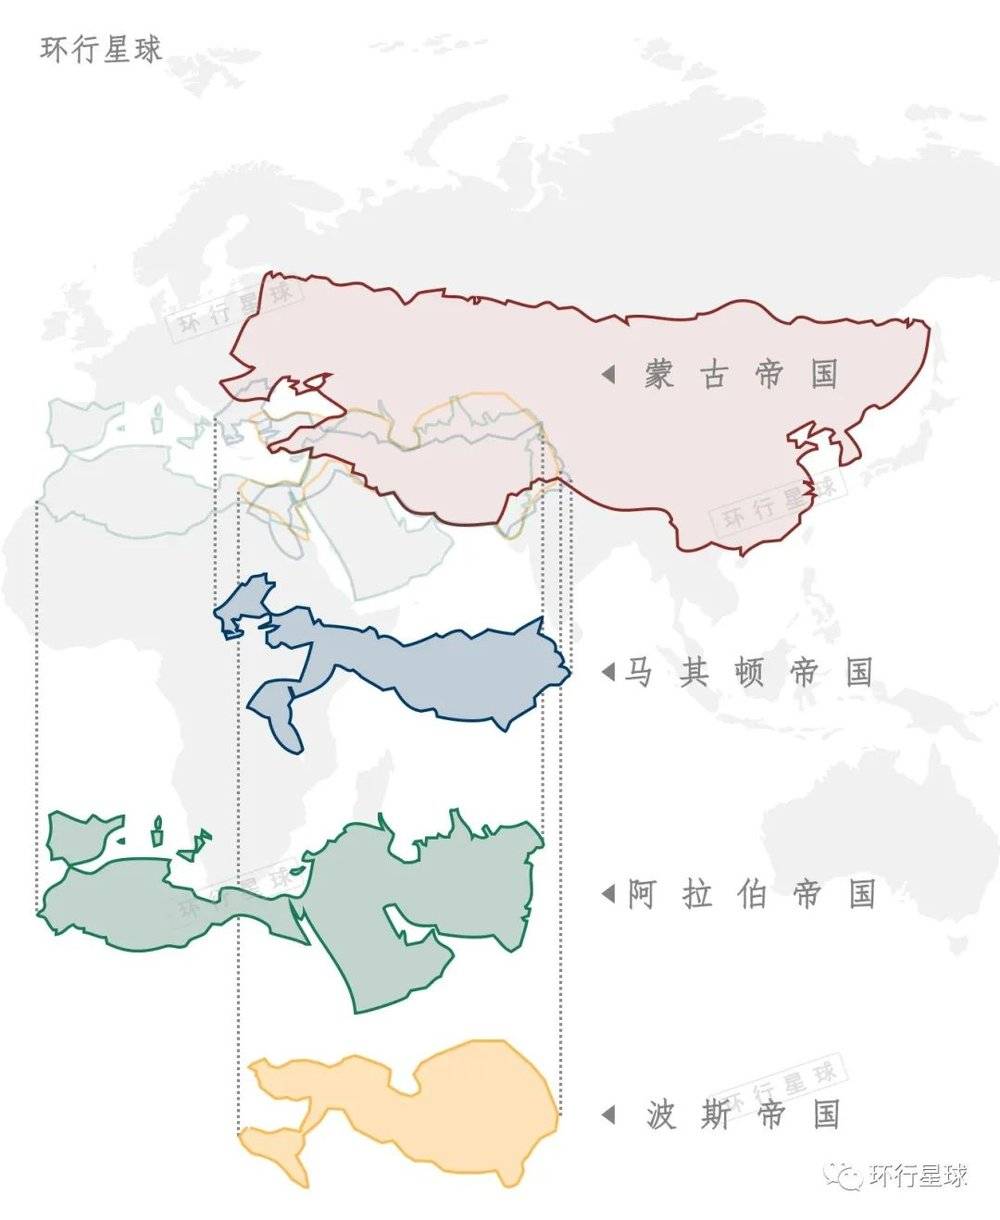 历史上众多超大帝国都促进了区域交流，蒙古帝国是其中最大之一